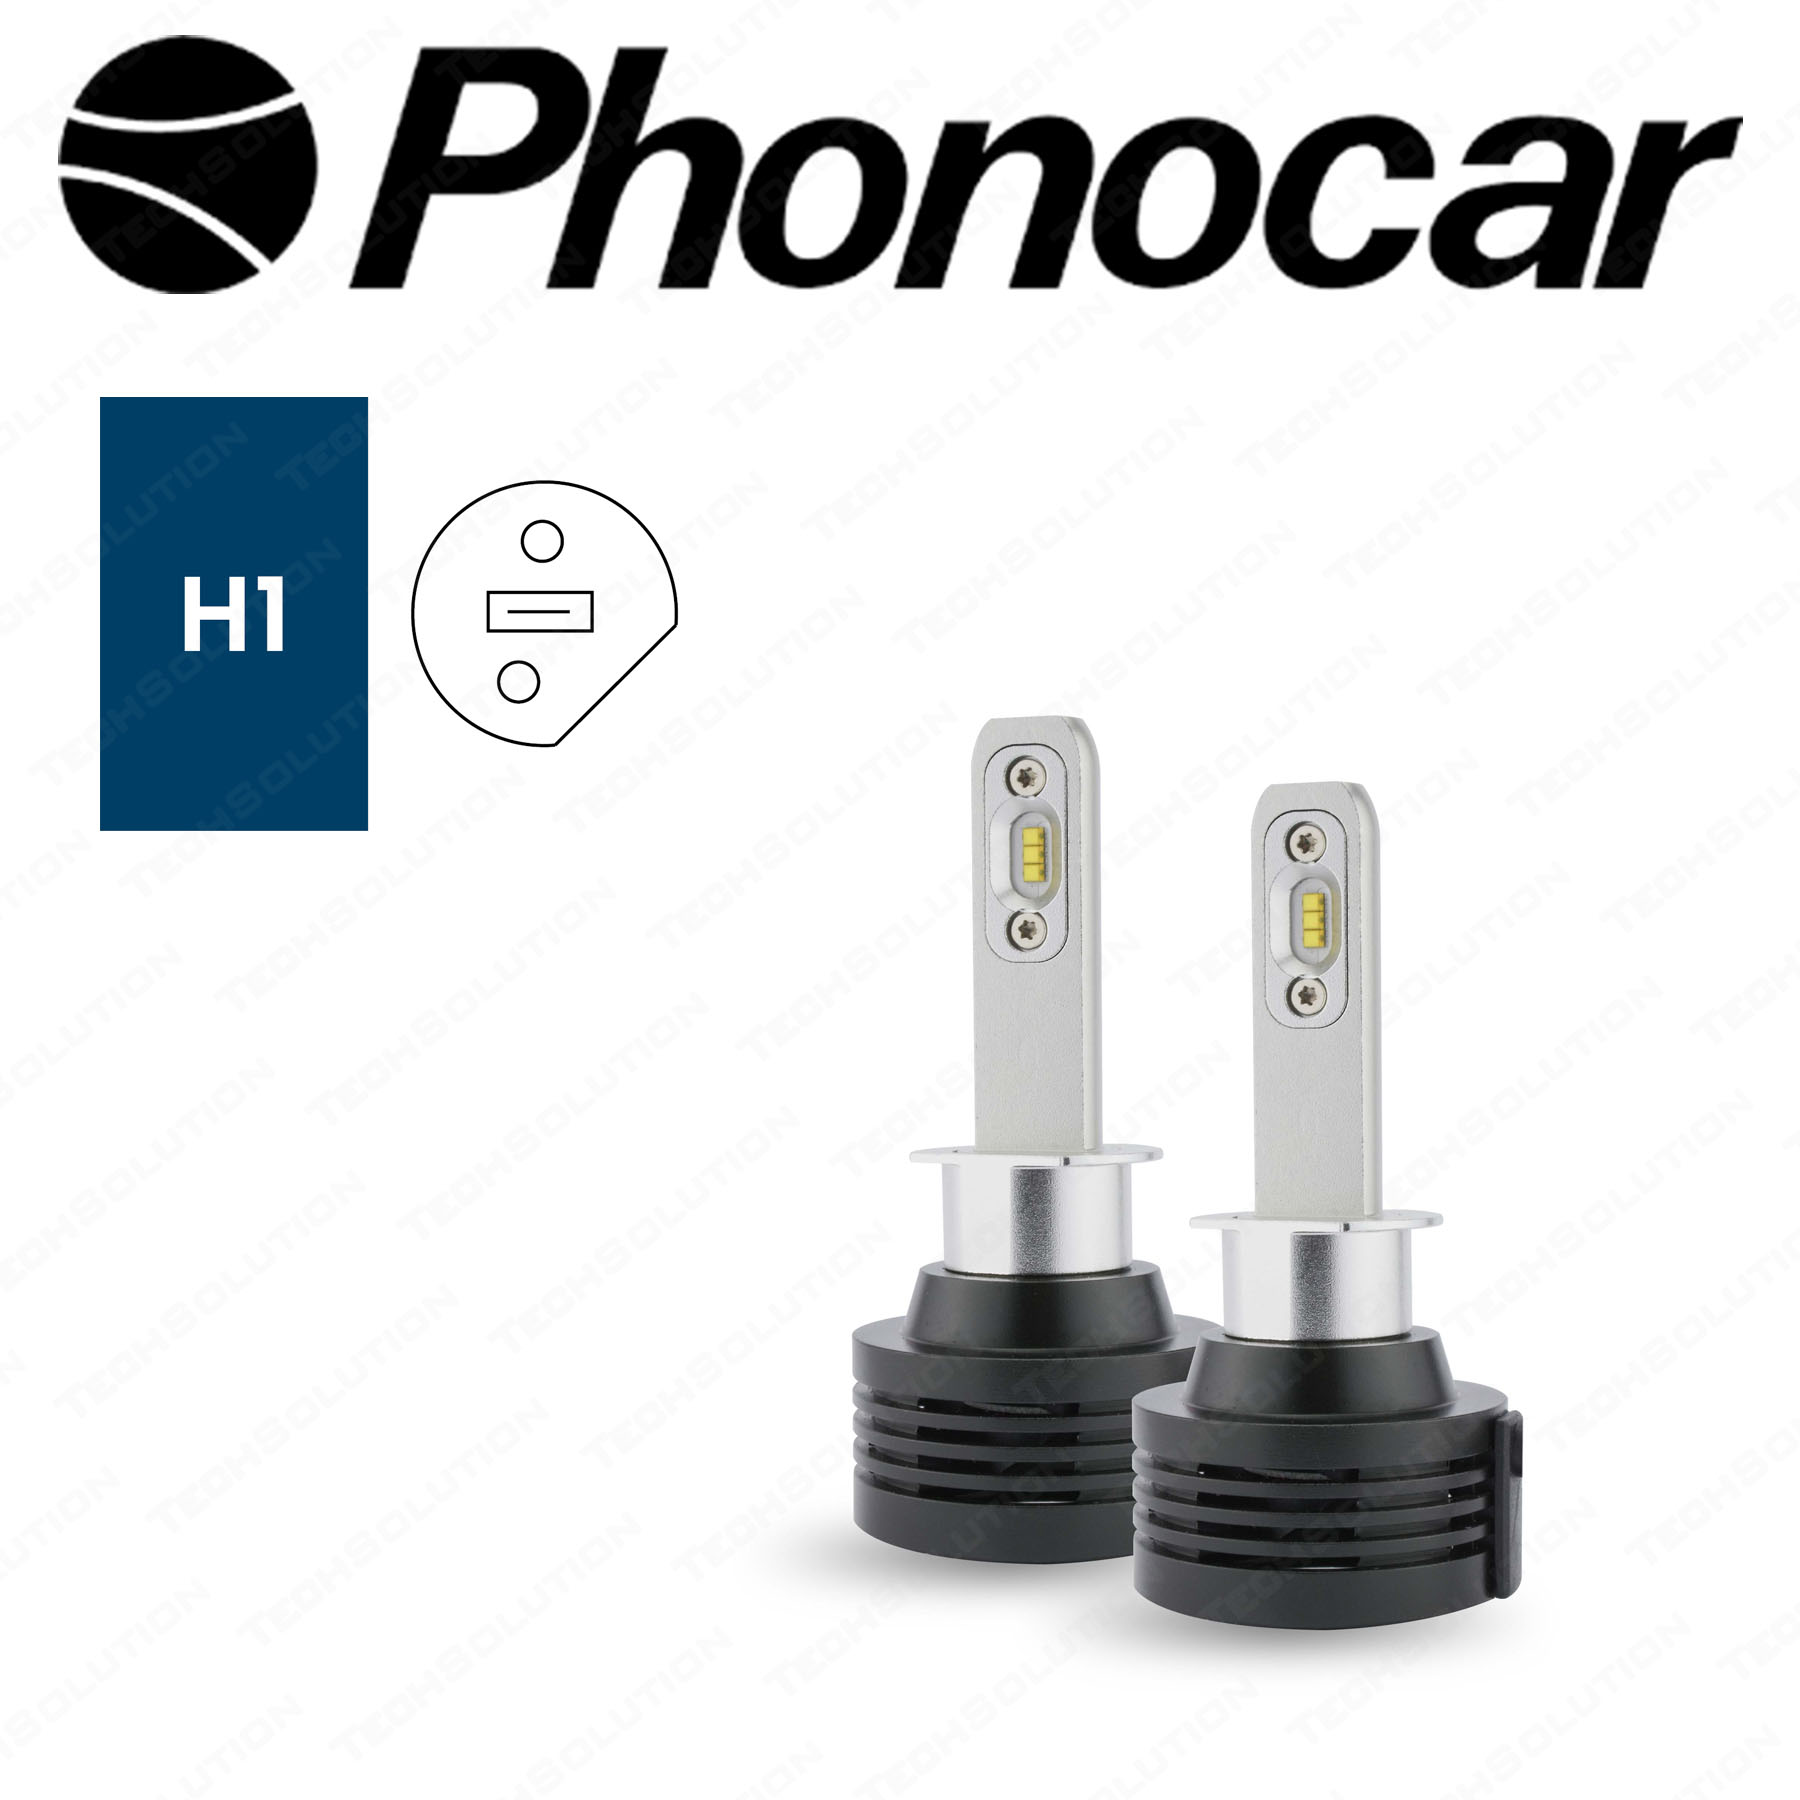 Phonocar 07521 Lampade Led H1 Compatte Master Plus 6000 K - Tech Solution